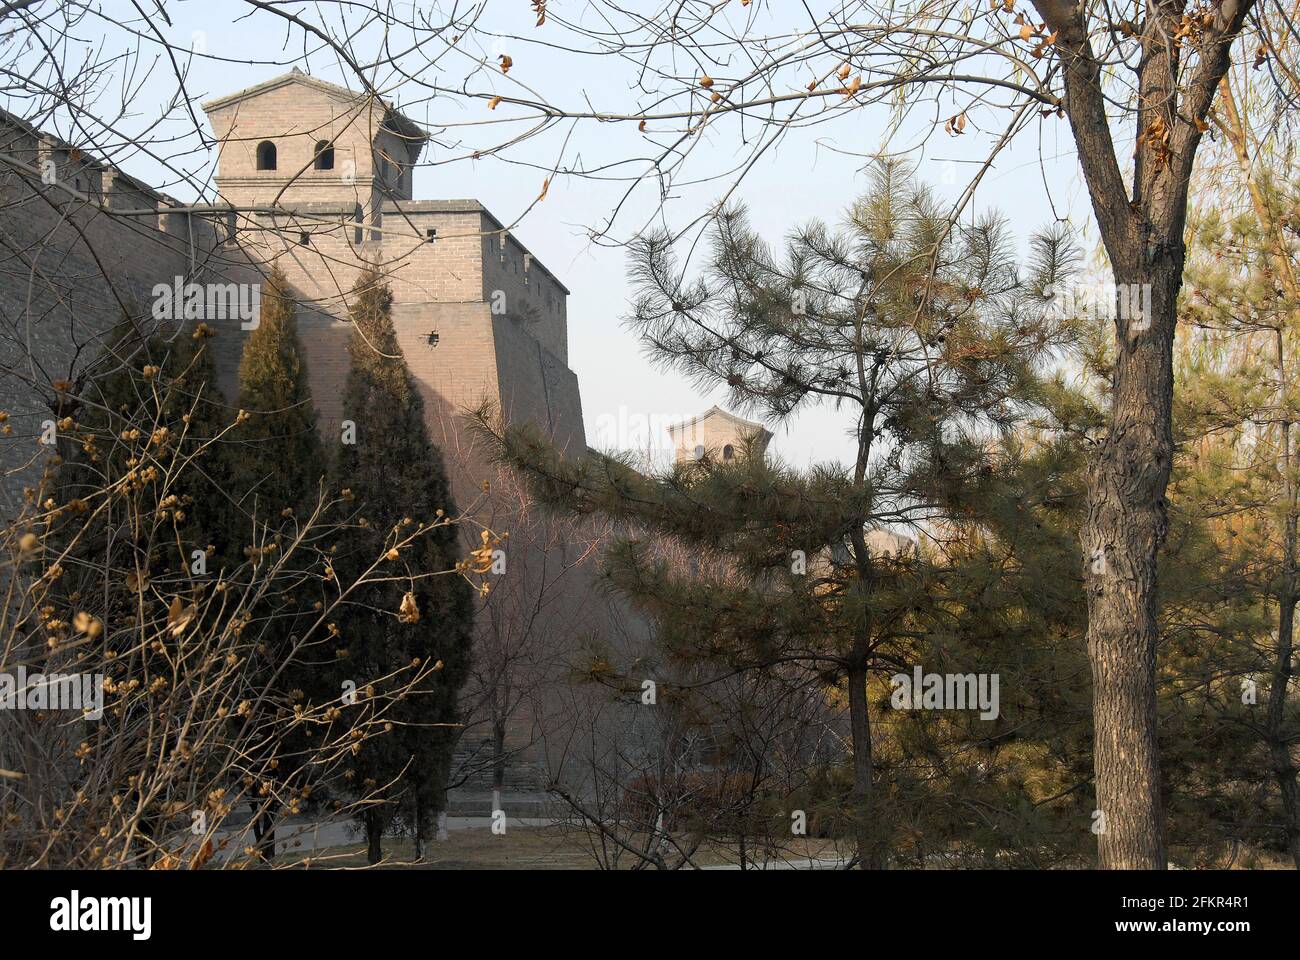 Pingyao dans la province du Shanxi, Chine. Mur de la ville de Pingyao et tours de guet vus du parc à côté de l'ancien mur. Banque D'Images